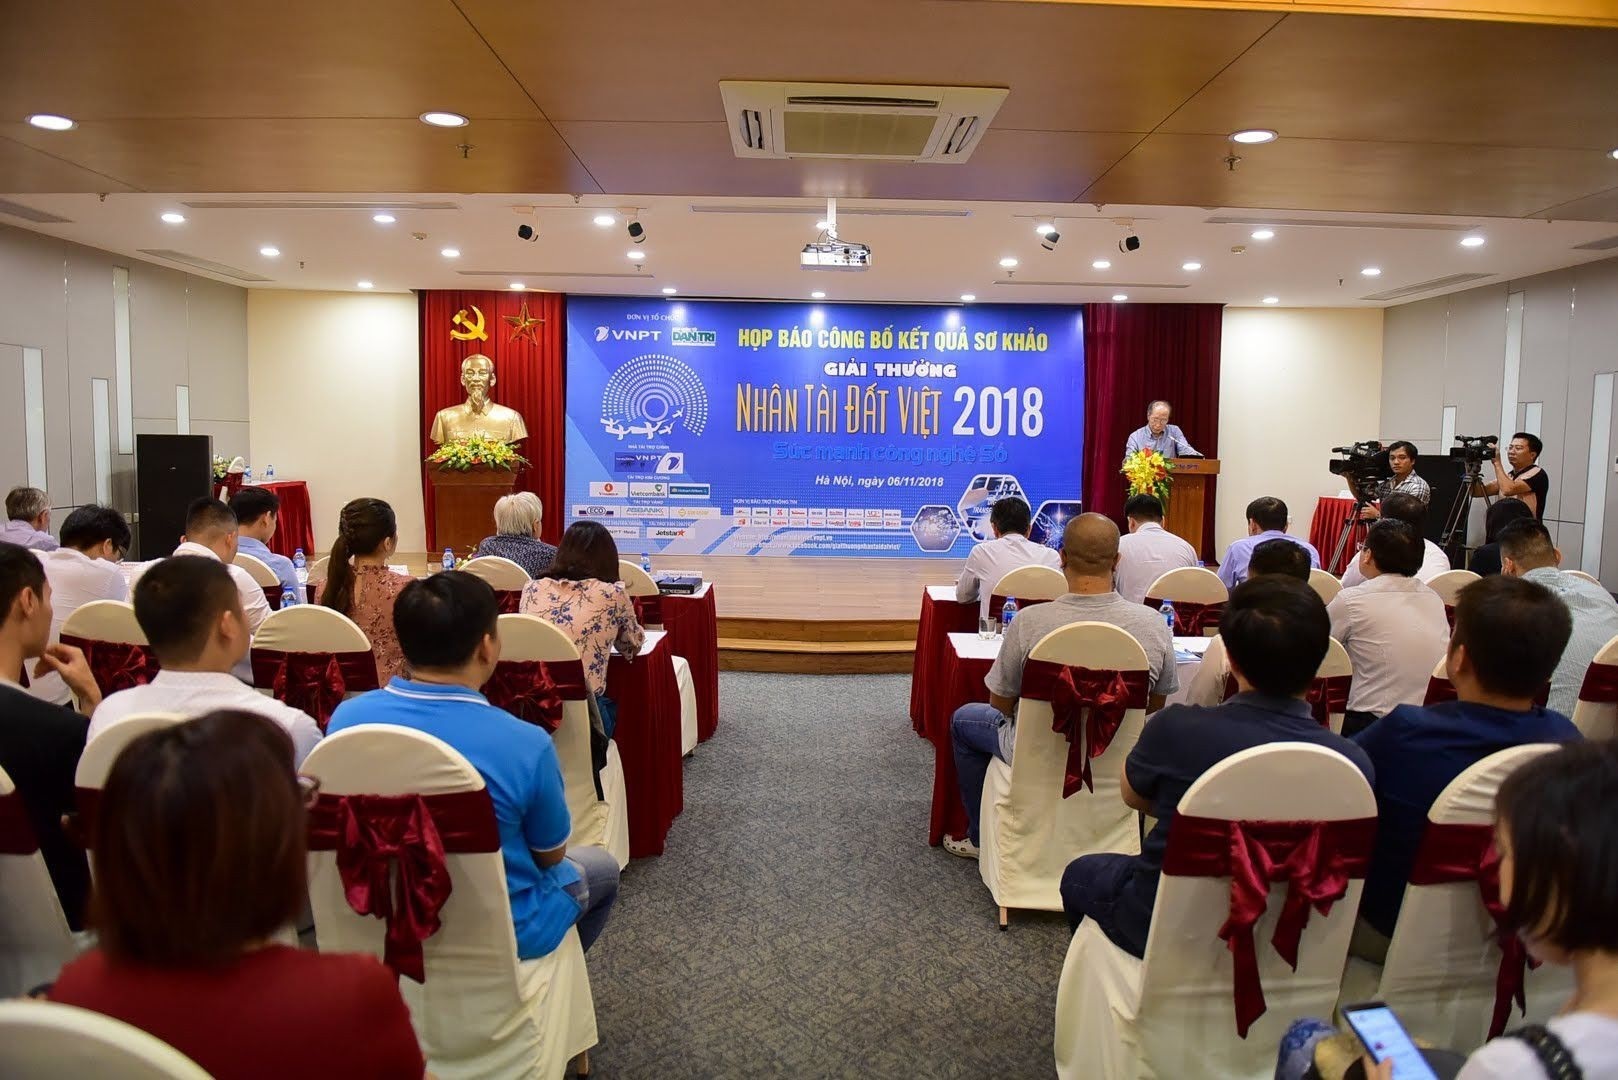  Buổi họp báo công bố kết quả sơ khảo NTĐV 2018 diễn ra chiều 6/11 tại Hà Nội. 